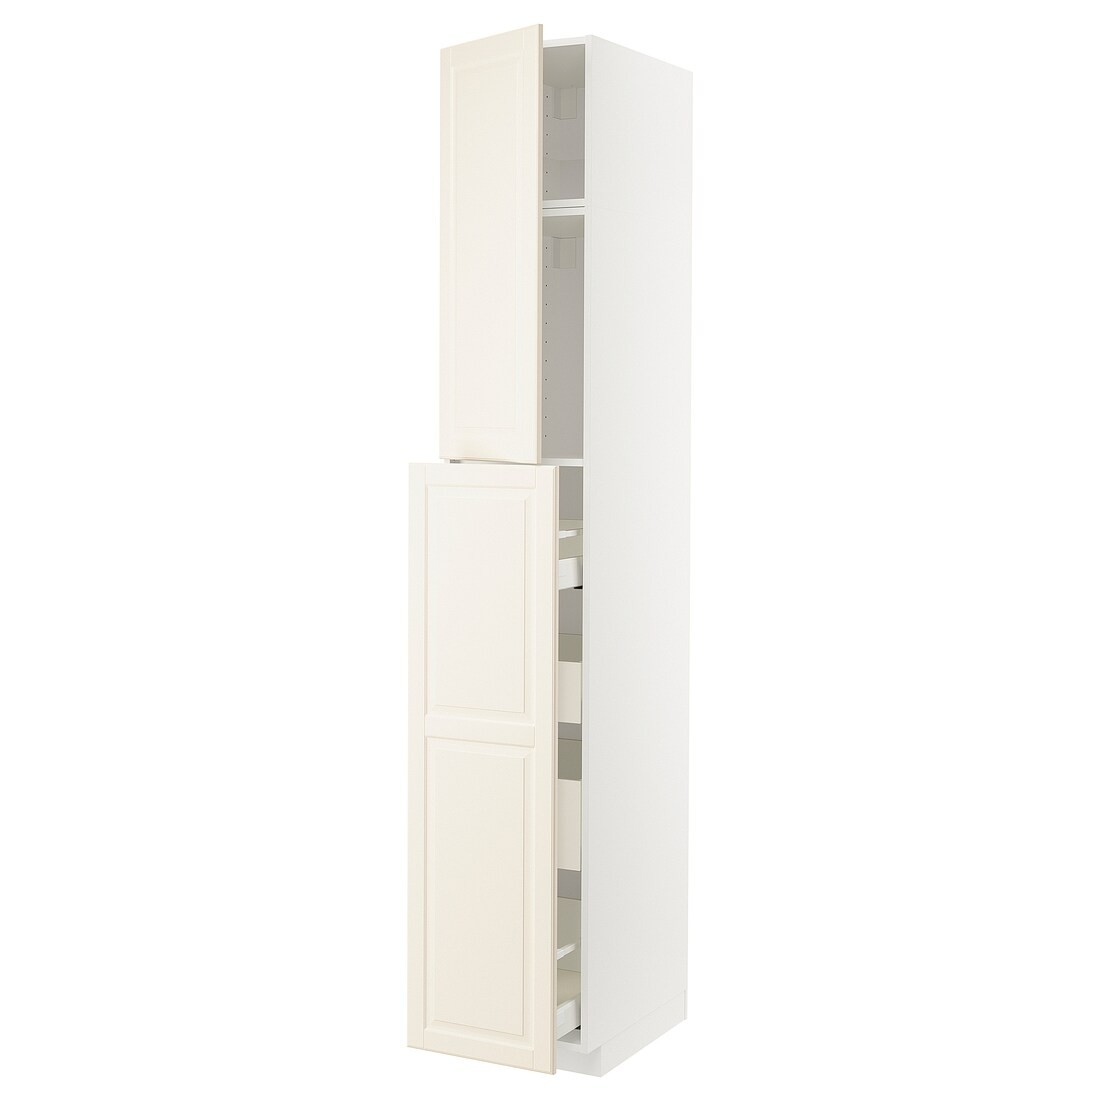 IKEA METOD МЕТОД / MAXIMERA МАКСИМЕРА Высокий шкаф полки / ящики, белый / Bodbyn кремовый, 40x60x240 см 19461096 | 194.610.96